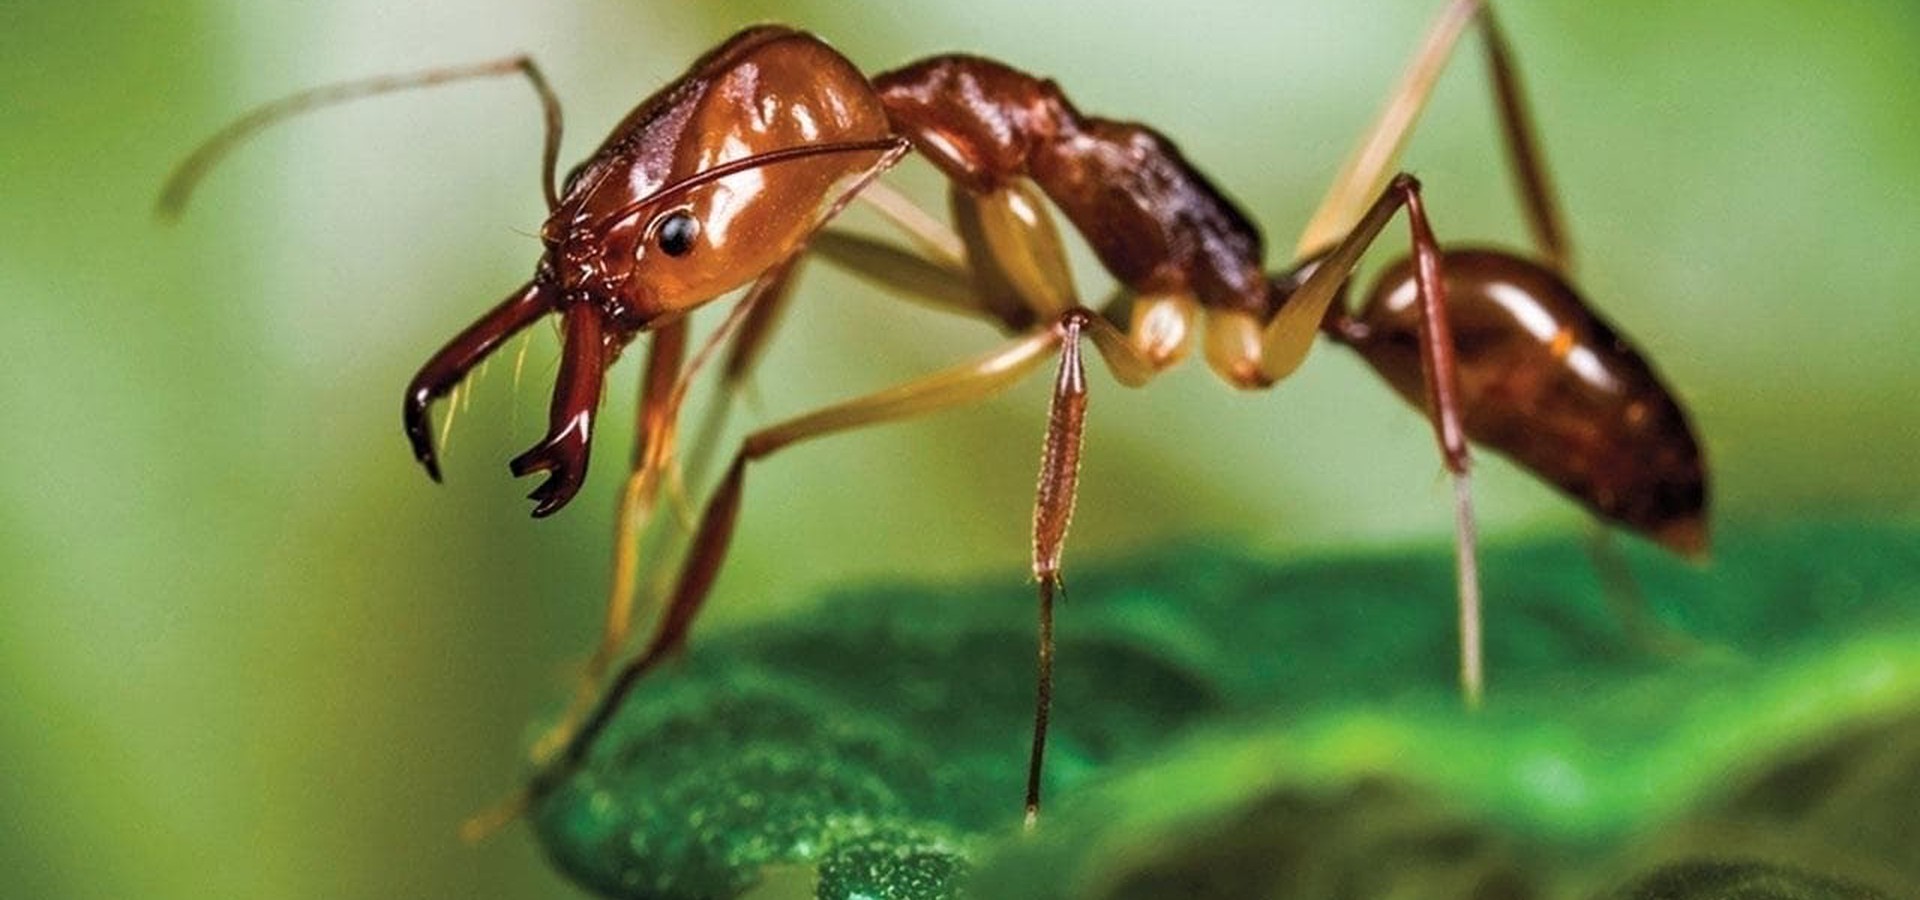 Ants: Nature's Secret Power